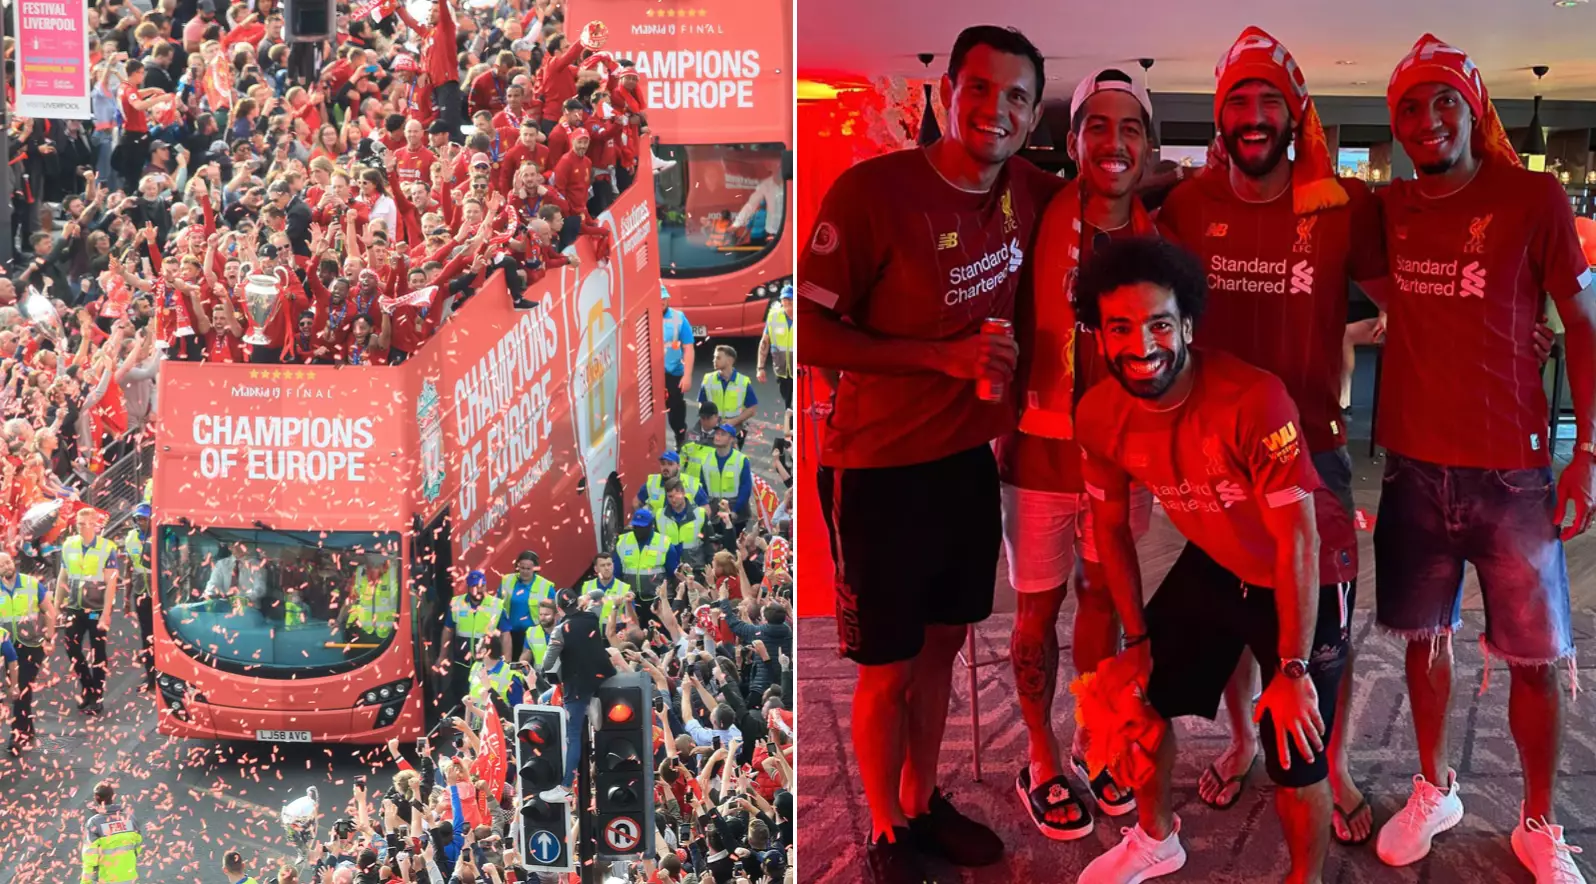 Liverpool City Council Confirm Liverpool Premier League Title Parade